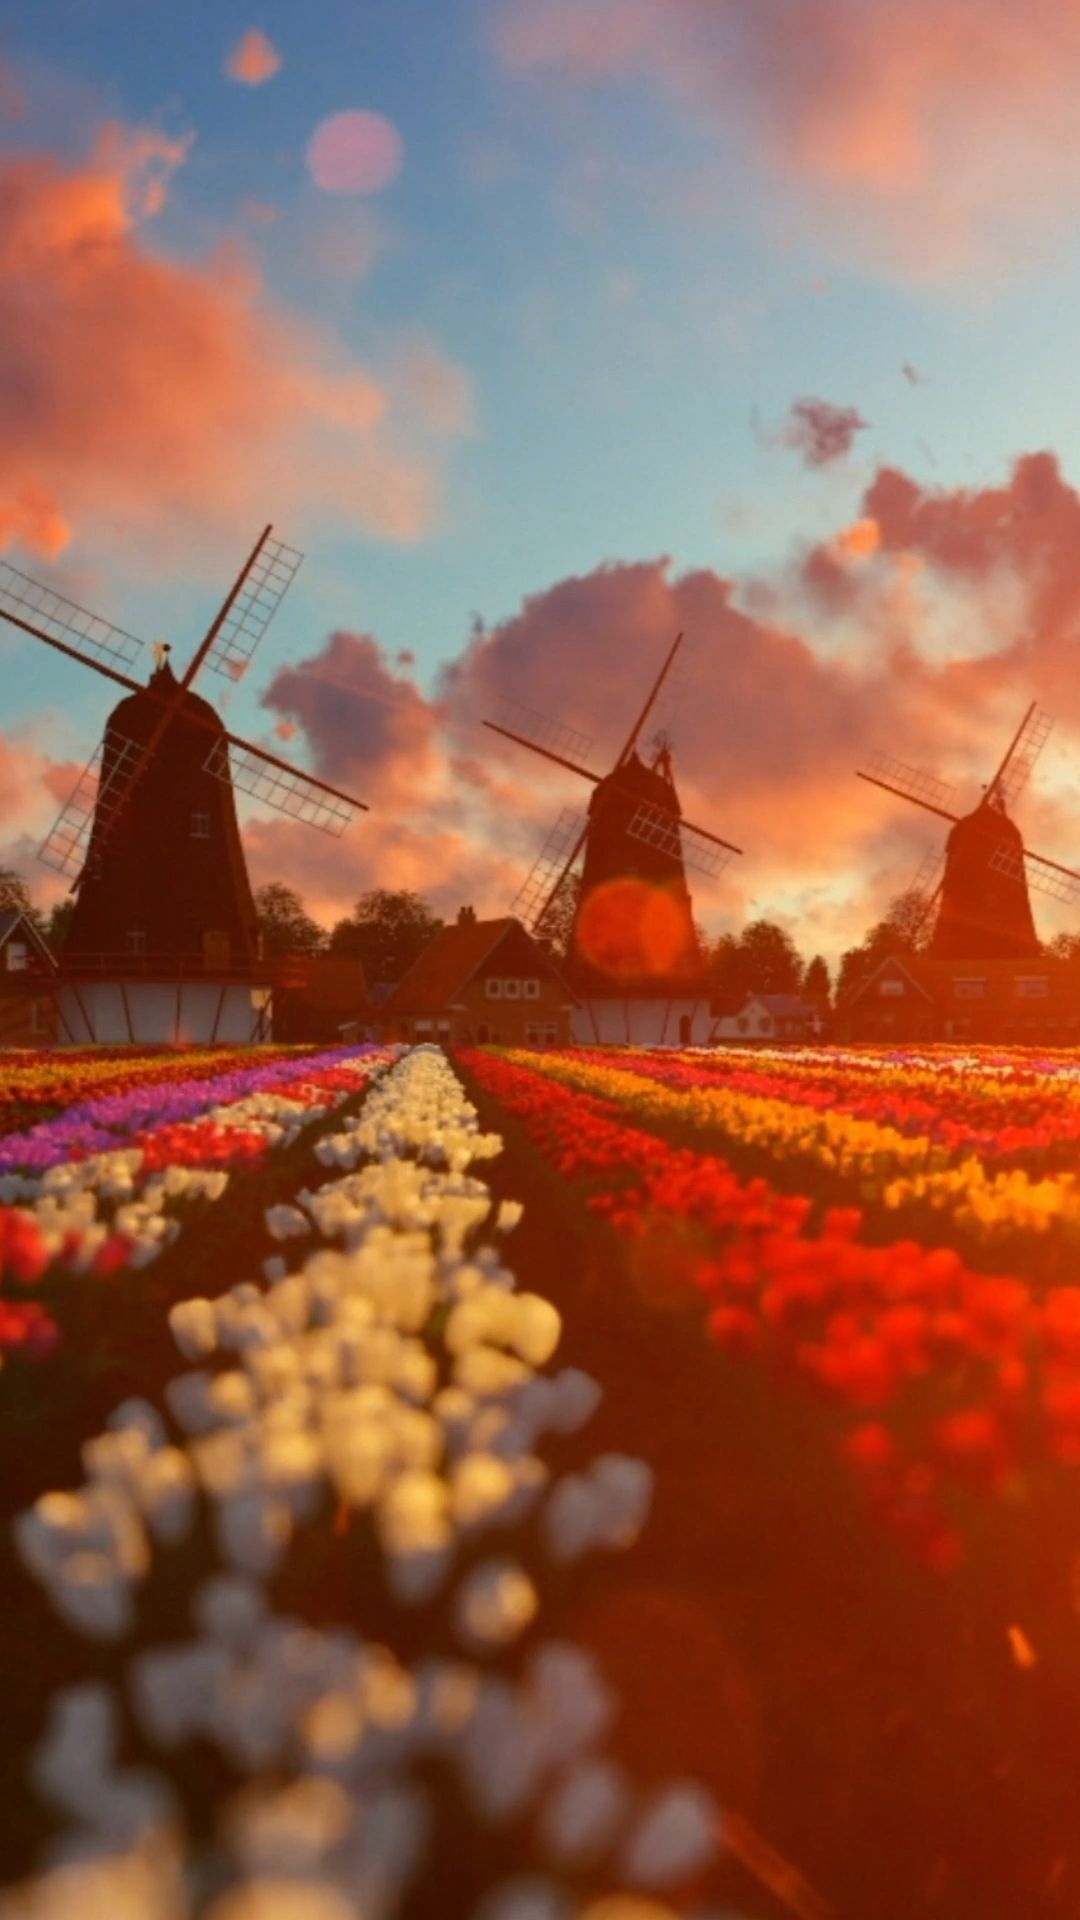 Farm: Tulips field, Netherlands, Farmhouse, Windmills. 1080x1920 Full HD Wallpaper.